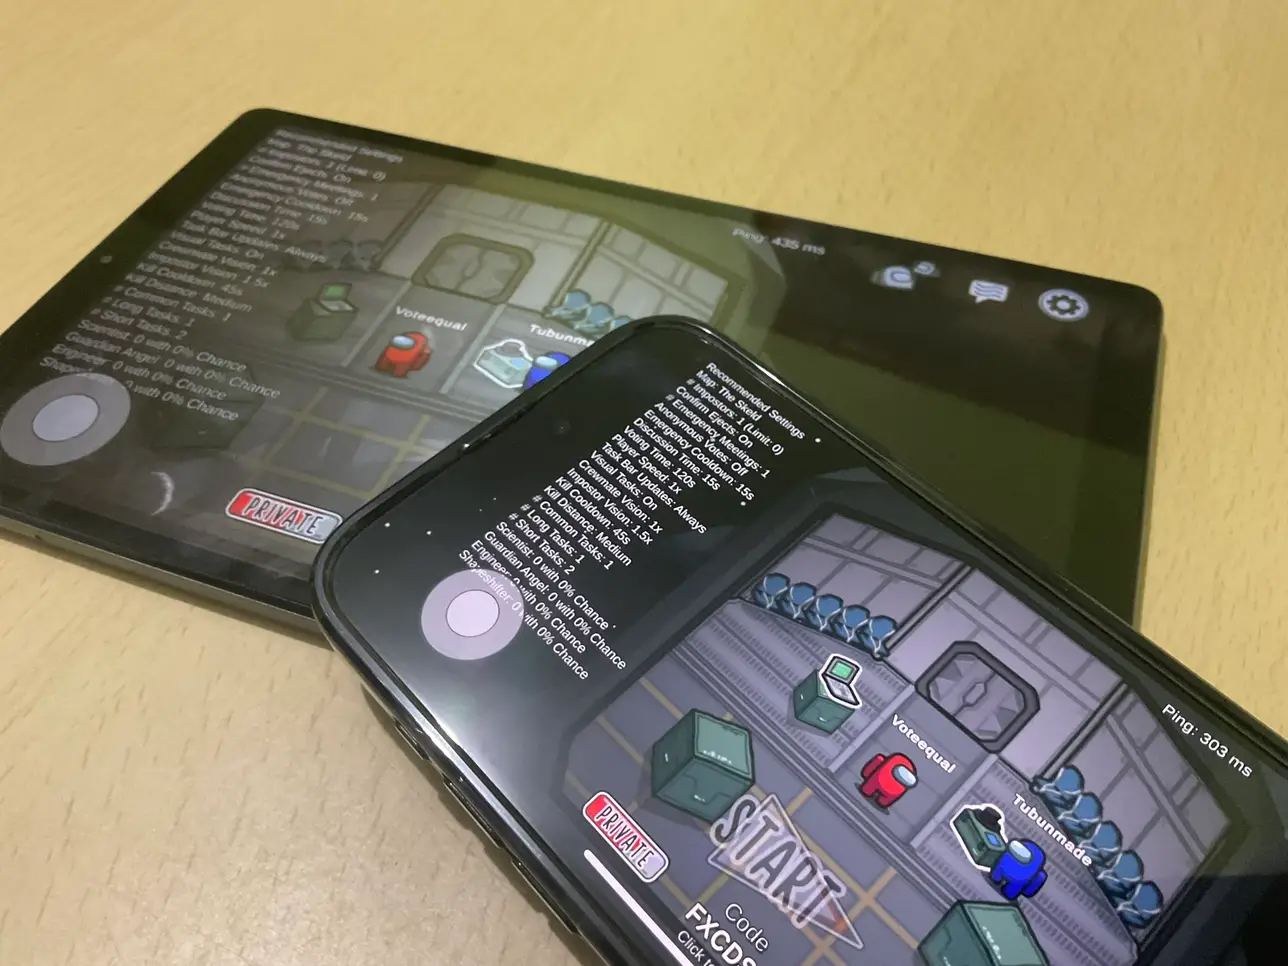 Spiele zusammen auf iPhone und Android spielen